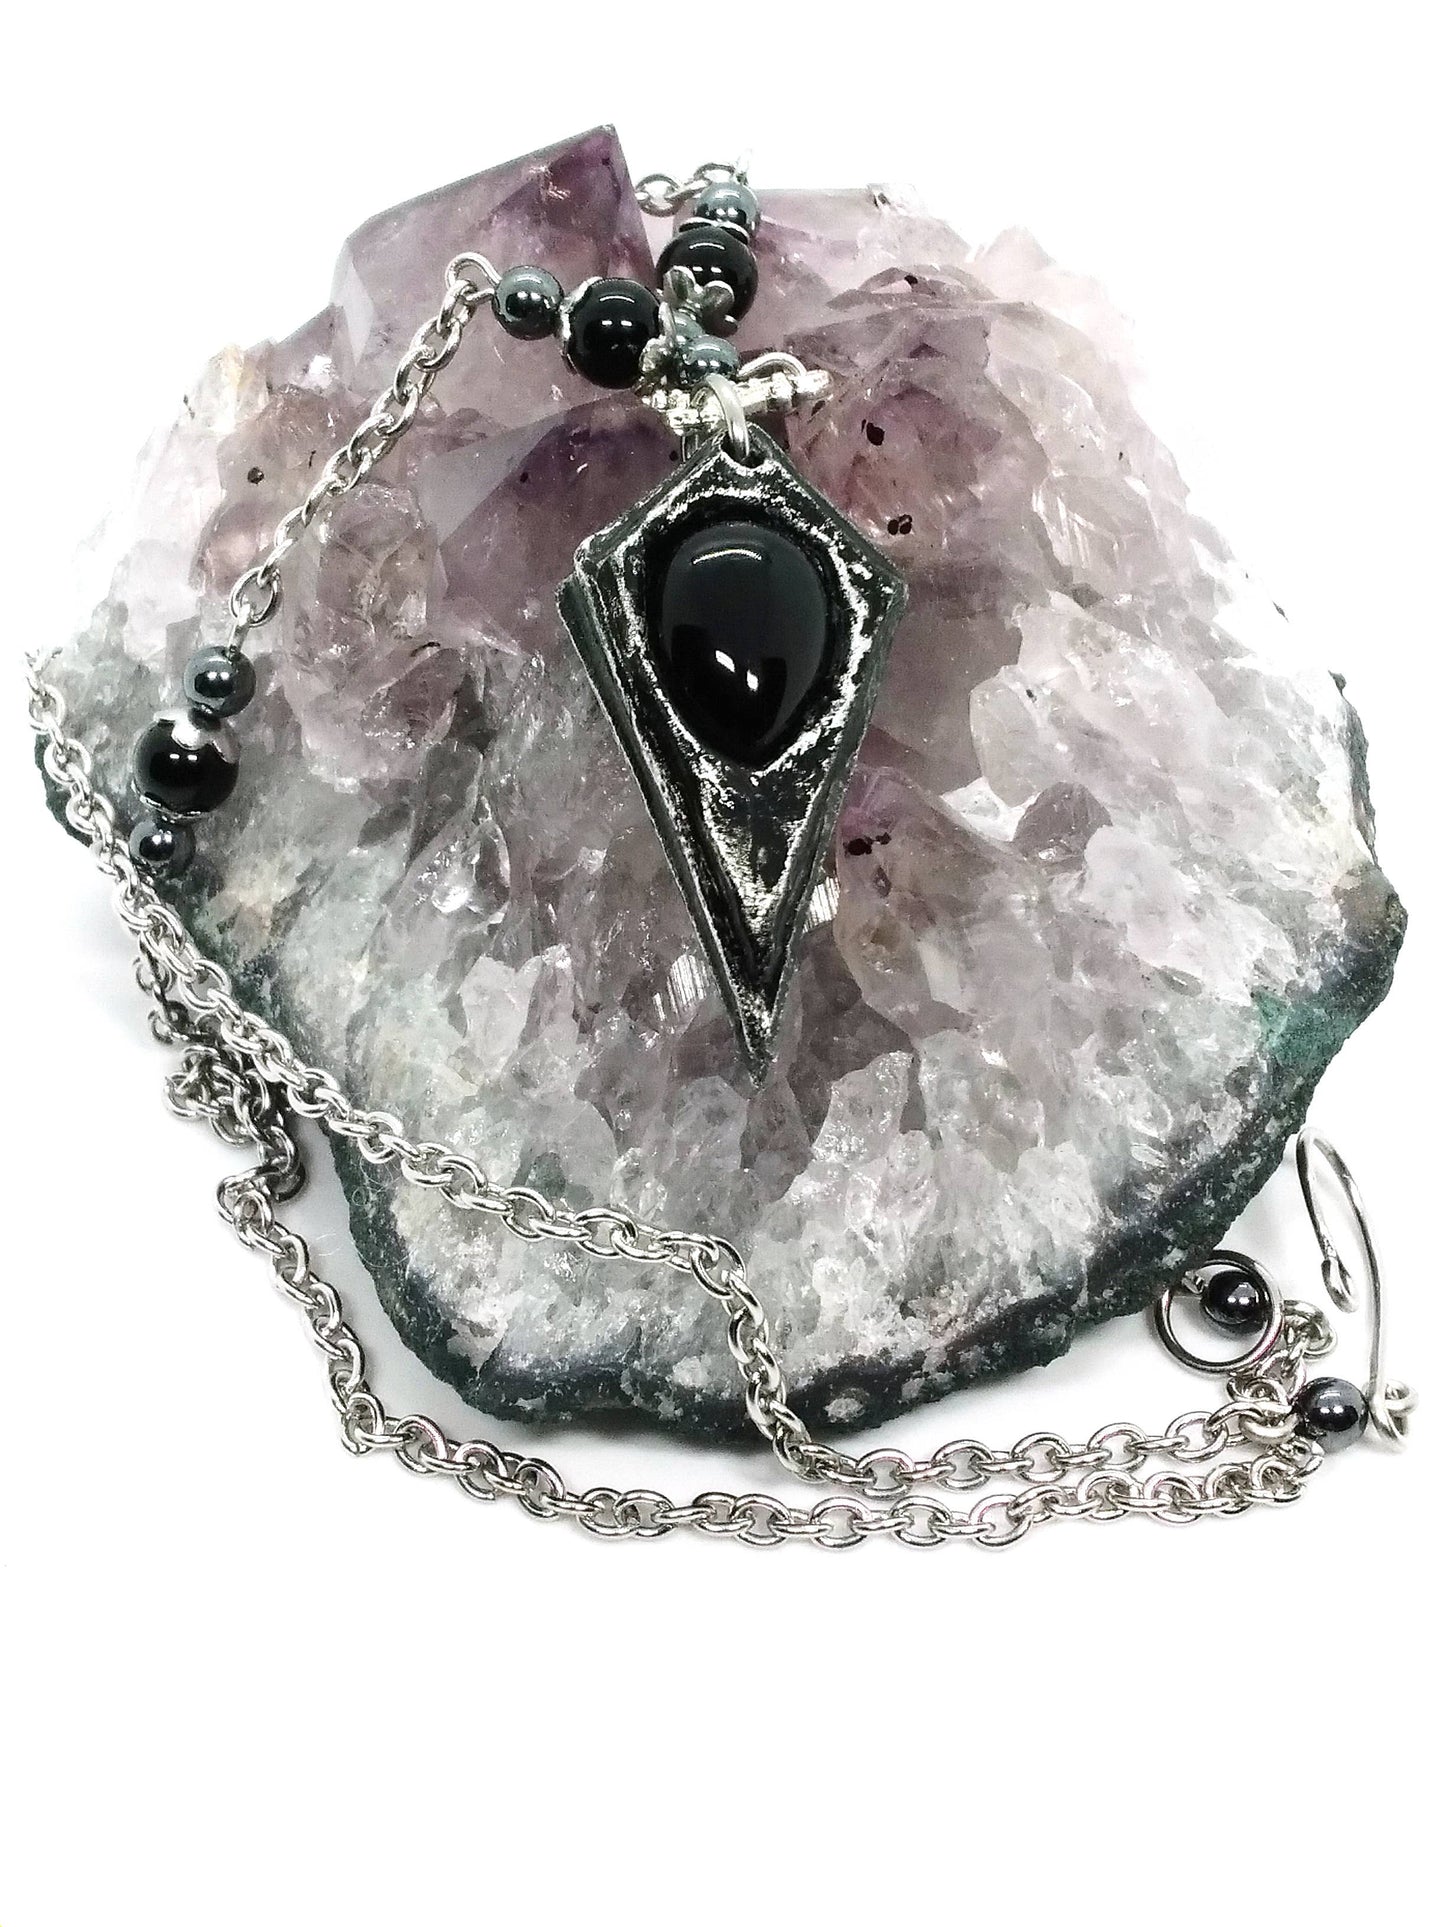 Pendulum Necklace with Stone Options: Onyx